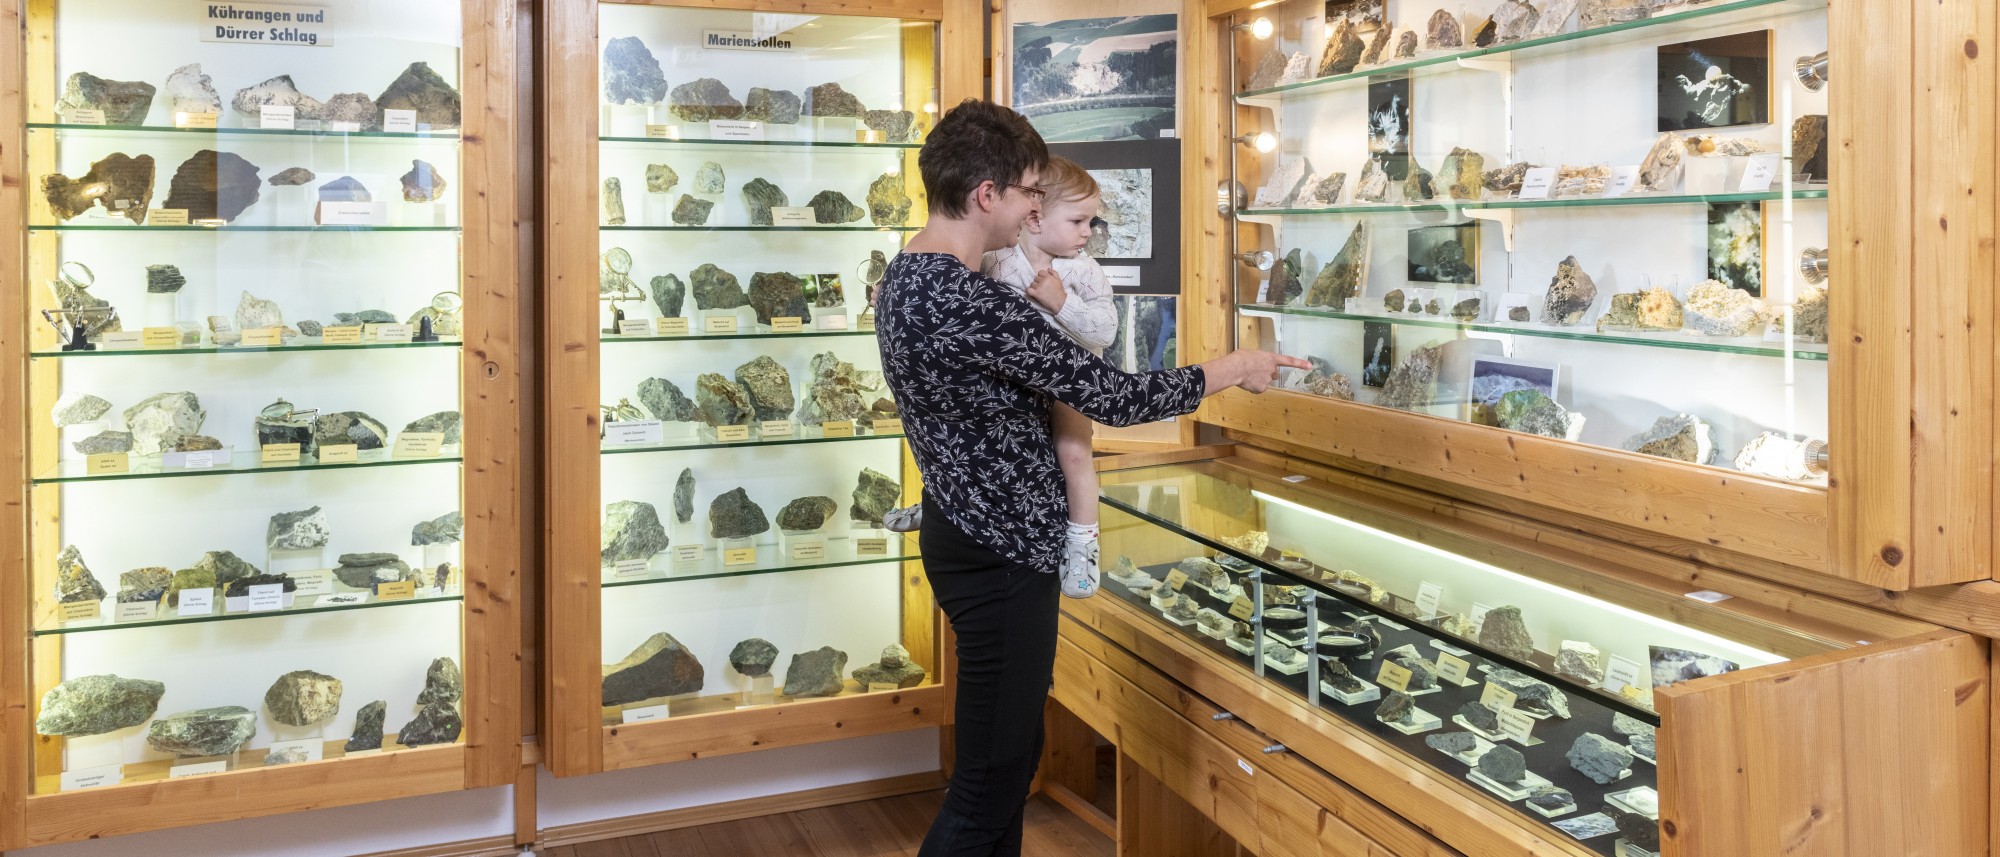 Frau mit Kind sehen sich Mineralien in der Ausstellung an